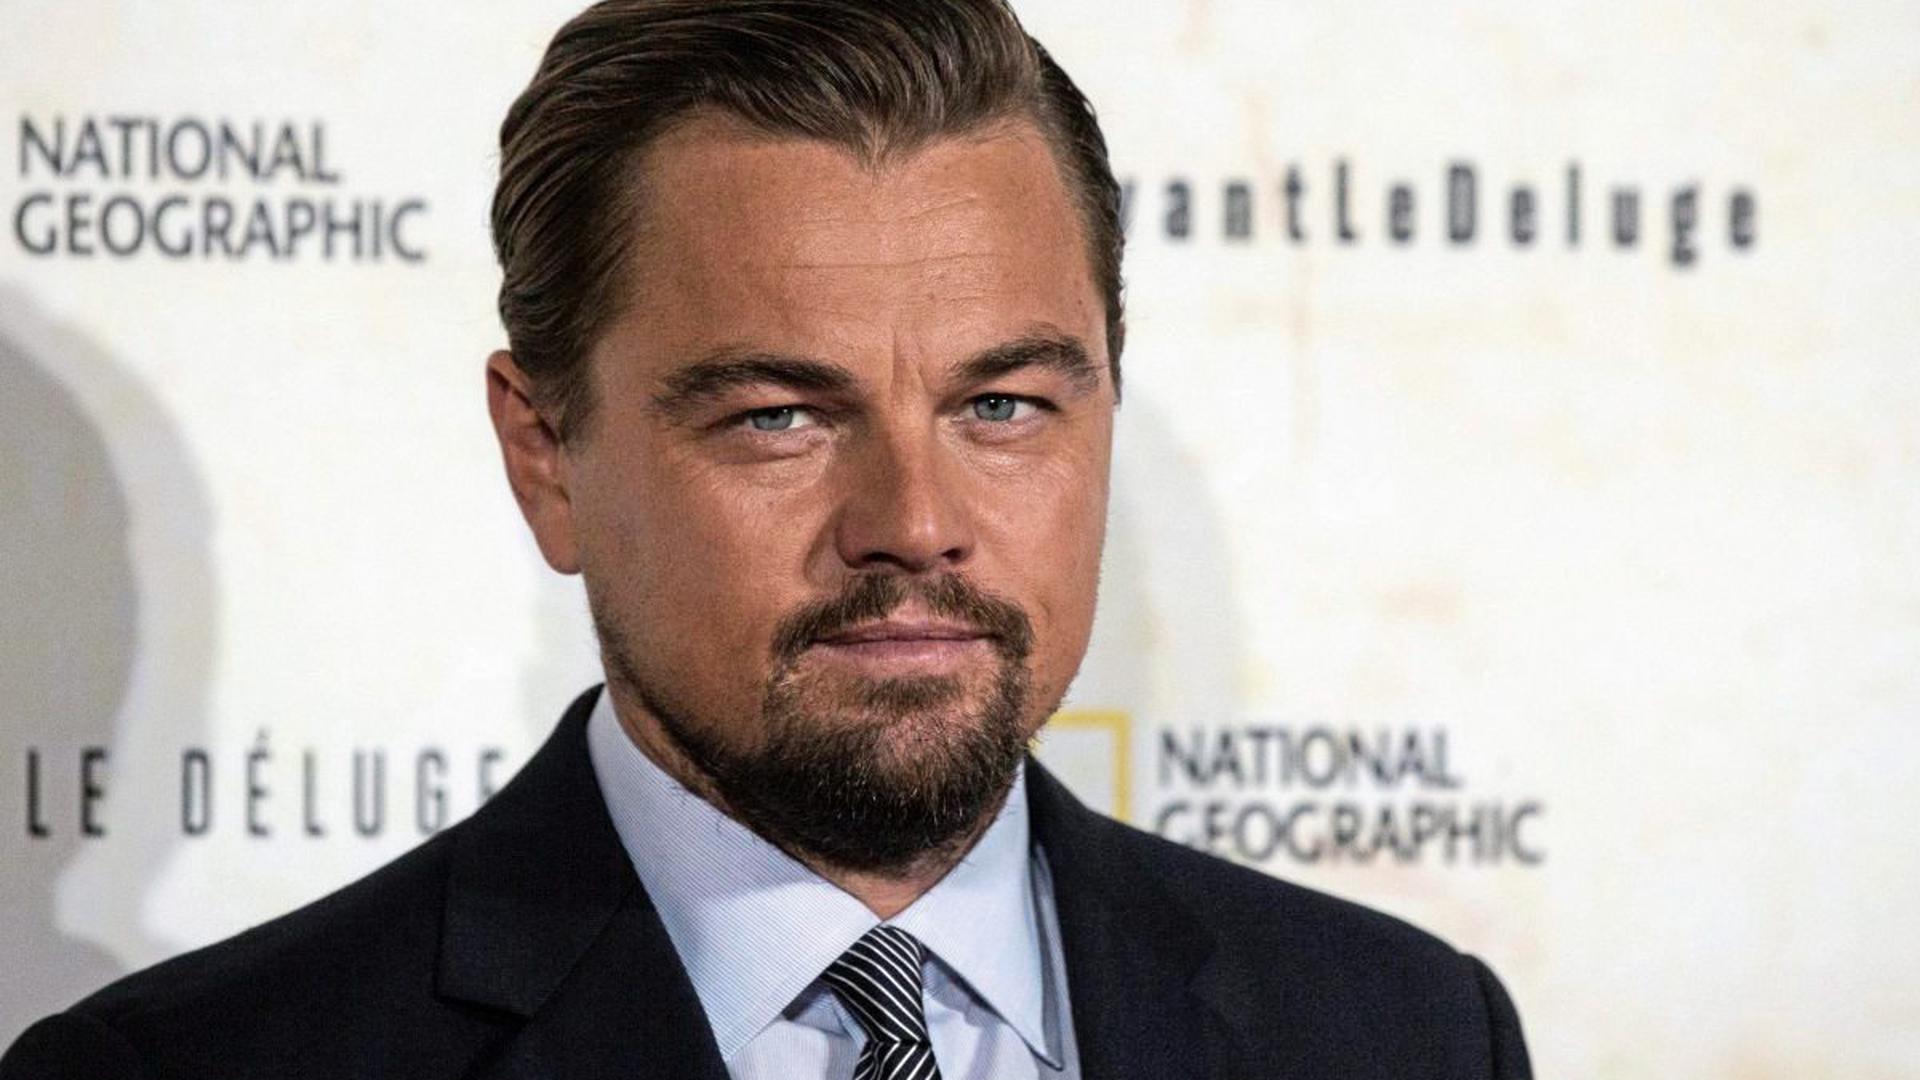 Leonardo DiCaprio spielt eine der Hauptrollen im neuen Tarantino-Film "Once Upon A Time In Hollywood".